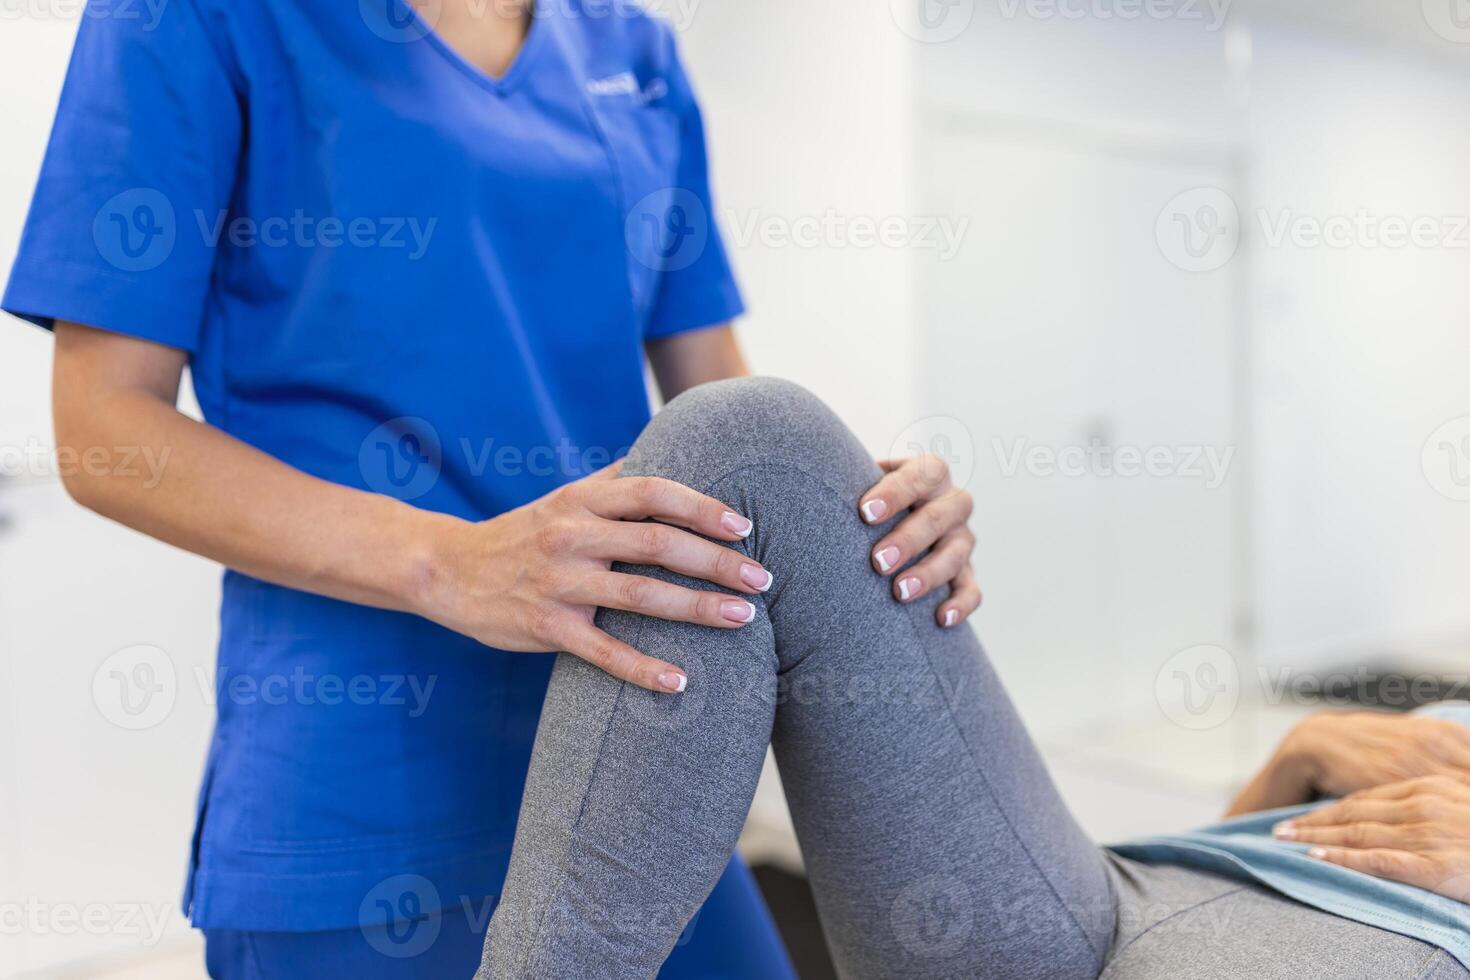 fisioterapeuta trabajando con paciente en clínica, de cerca. un moderno rehabilitación fisioterapia trabajador con mayor cliente, físico terapeuta extensión paciente rodilla foto